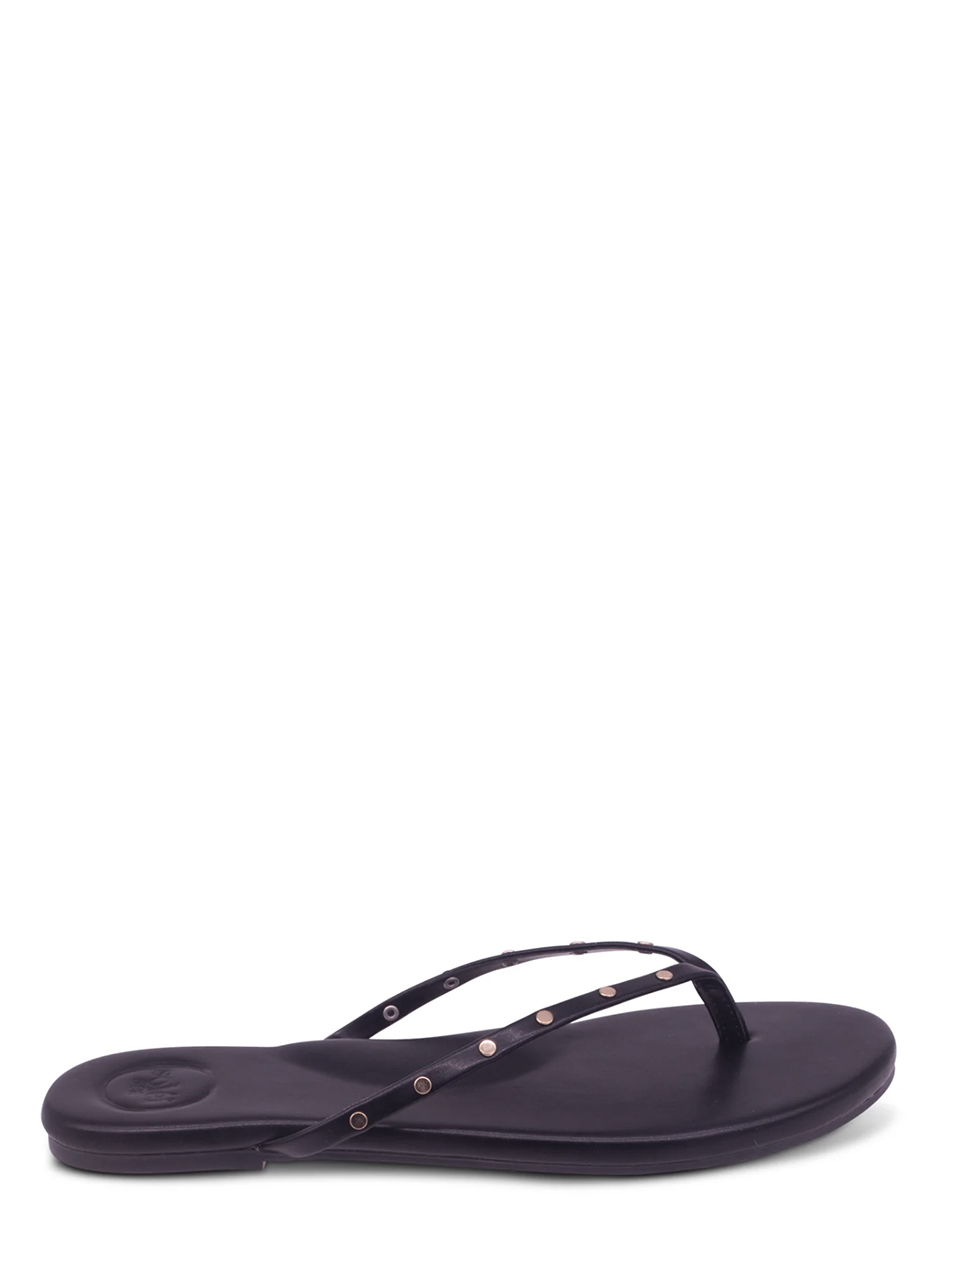 SOLEIL SEA Indie Elvis Sandals with Studs in Black Side Top View 